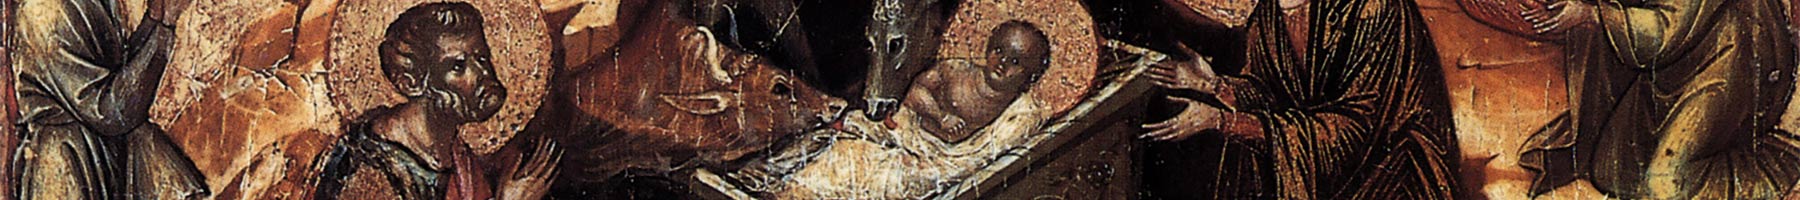 Medieval fresco of nativity scene in earth tones